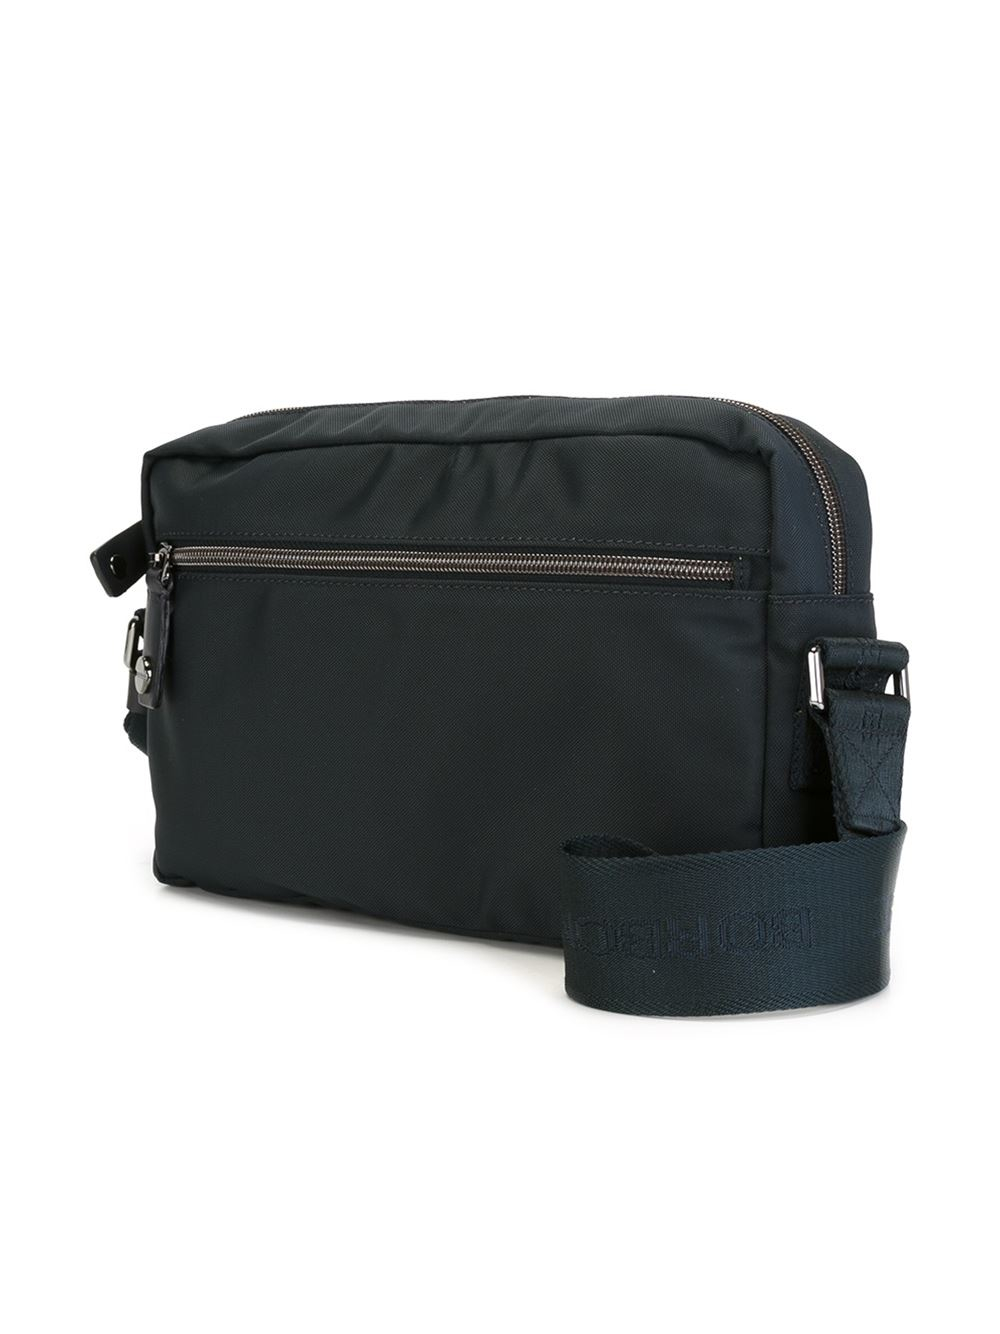 Lyst - Borbonese Top Zip Messenger Bag in Black for Men